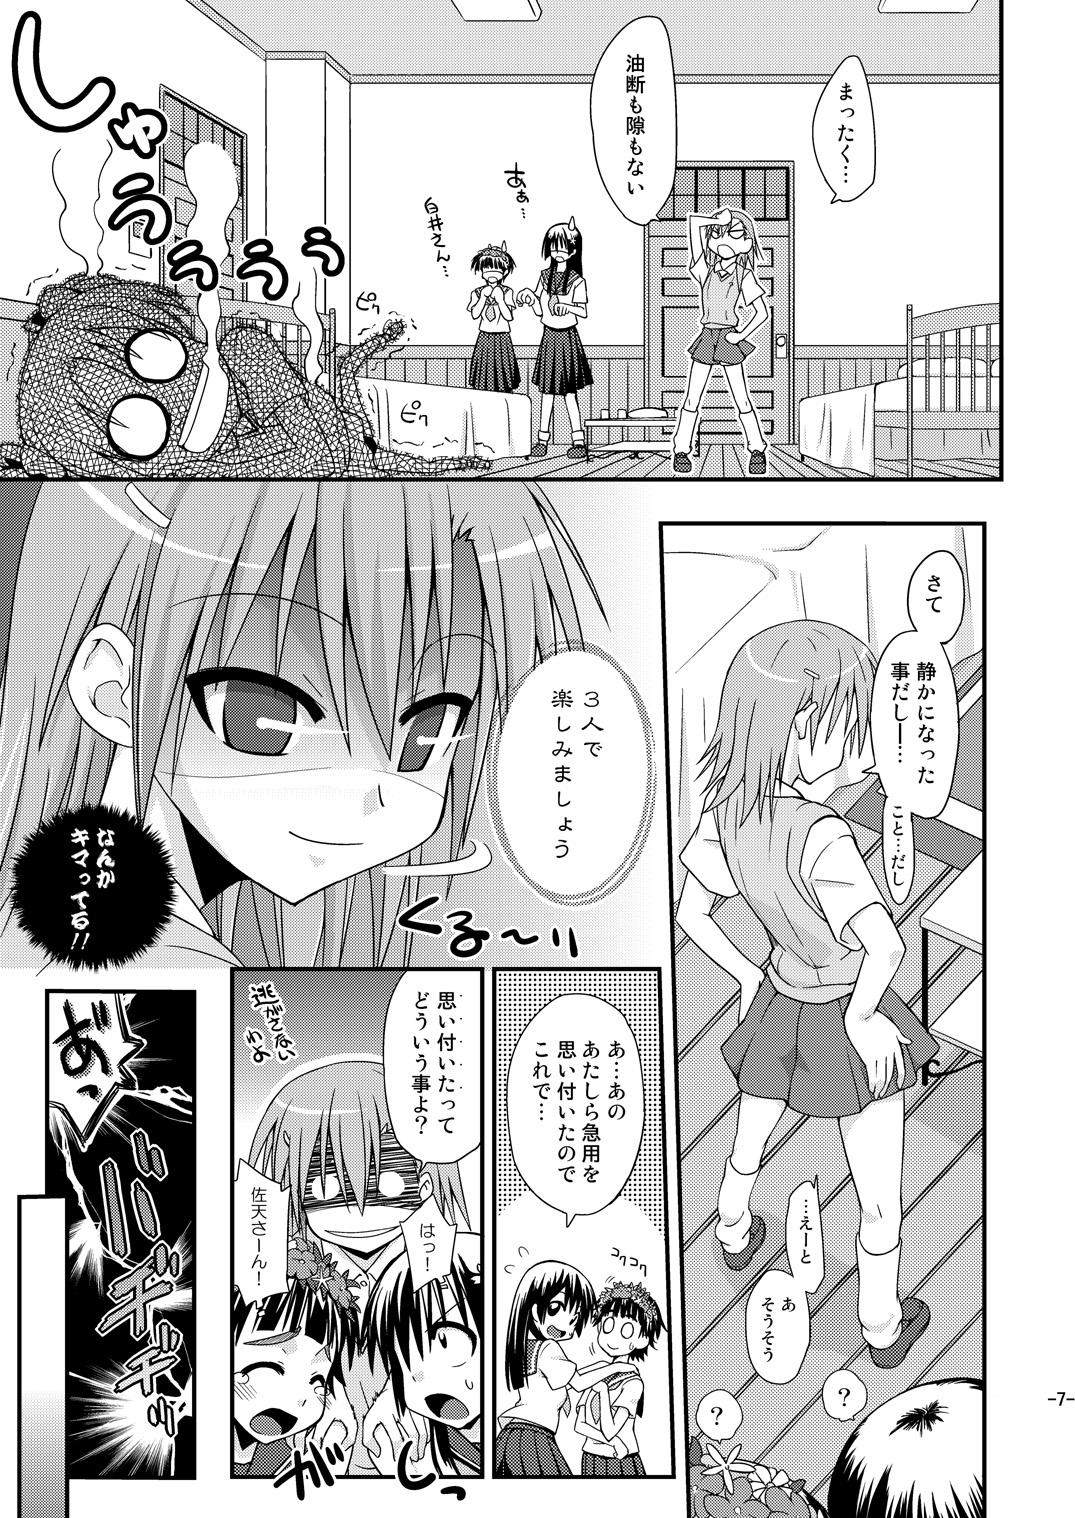 Best Blow Jobs Ever Toaru Biyaku de Splash - Toaru kagaku no railgun Infiel - Page 6